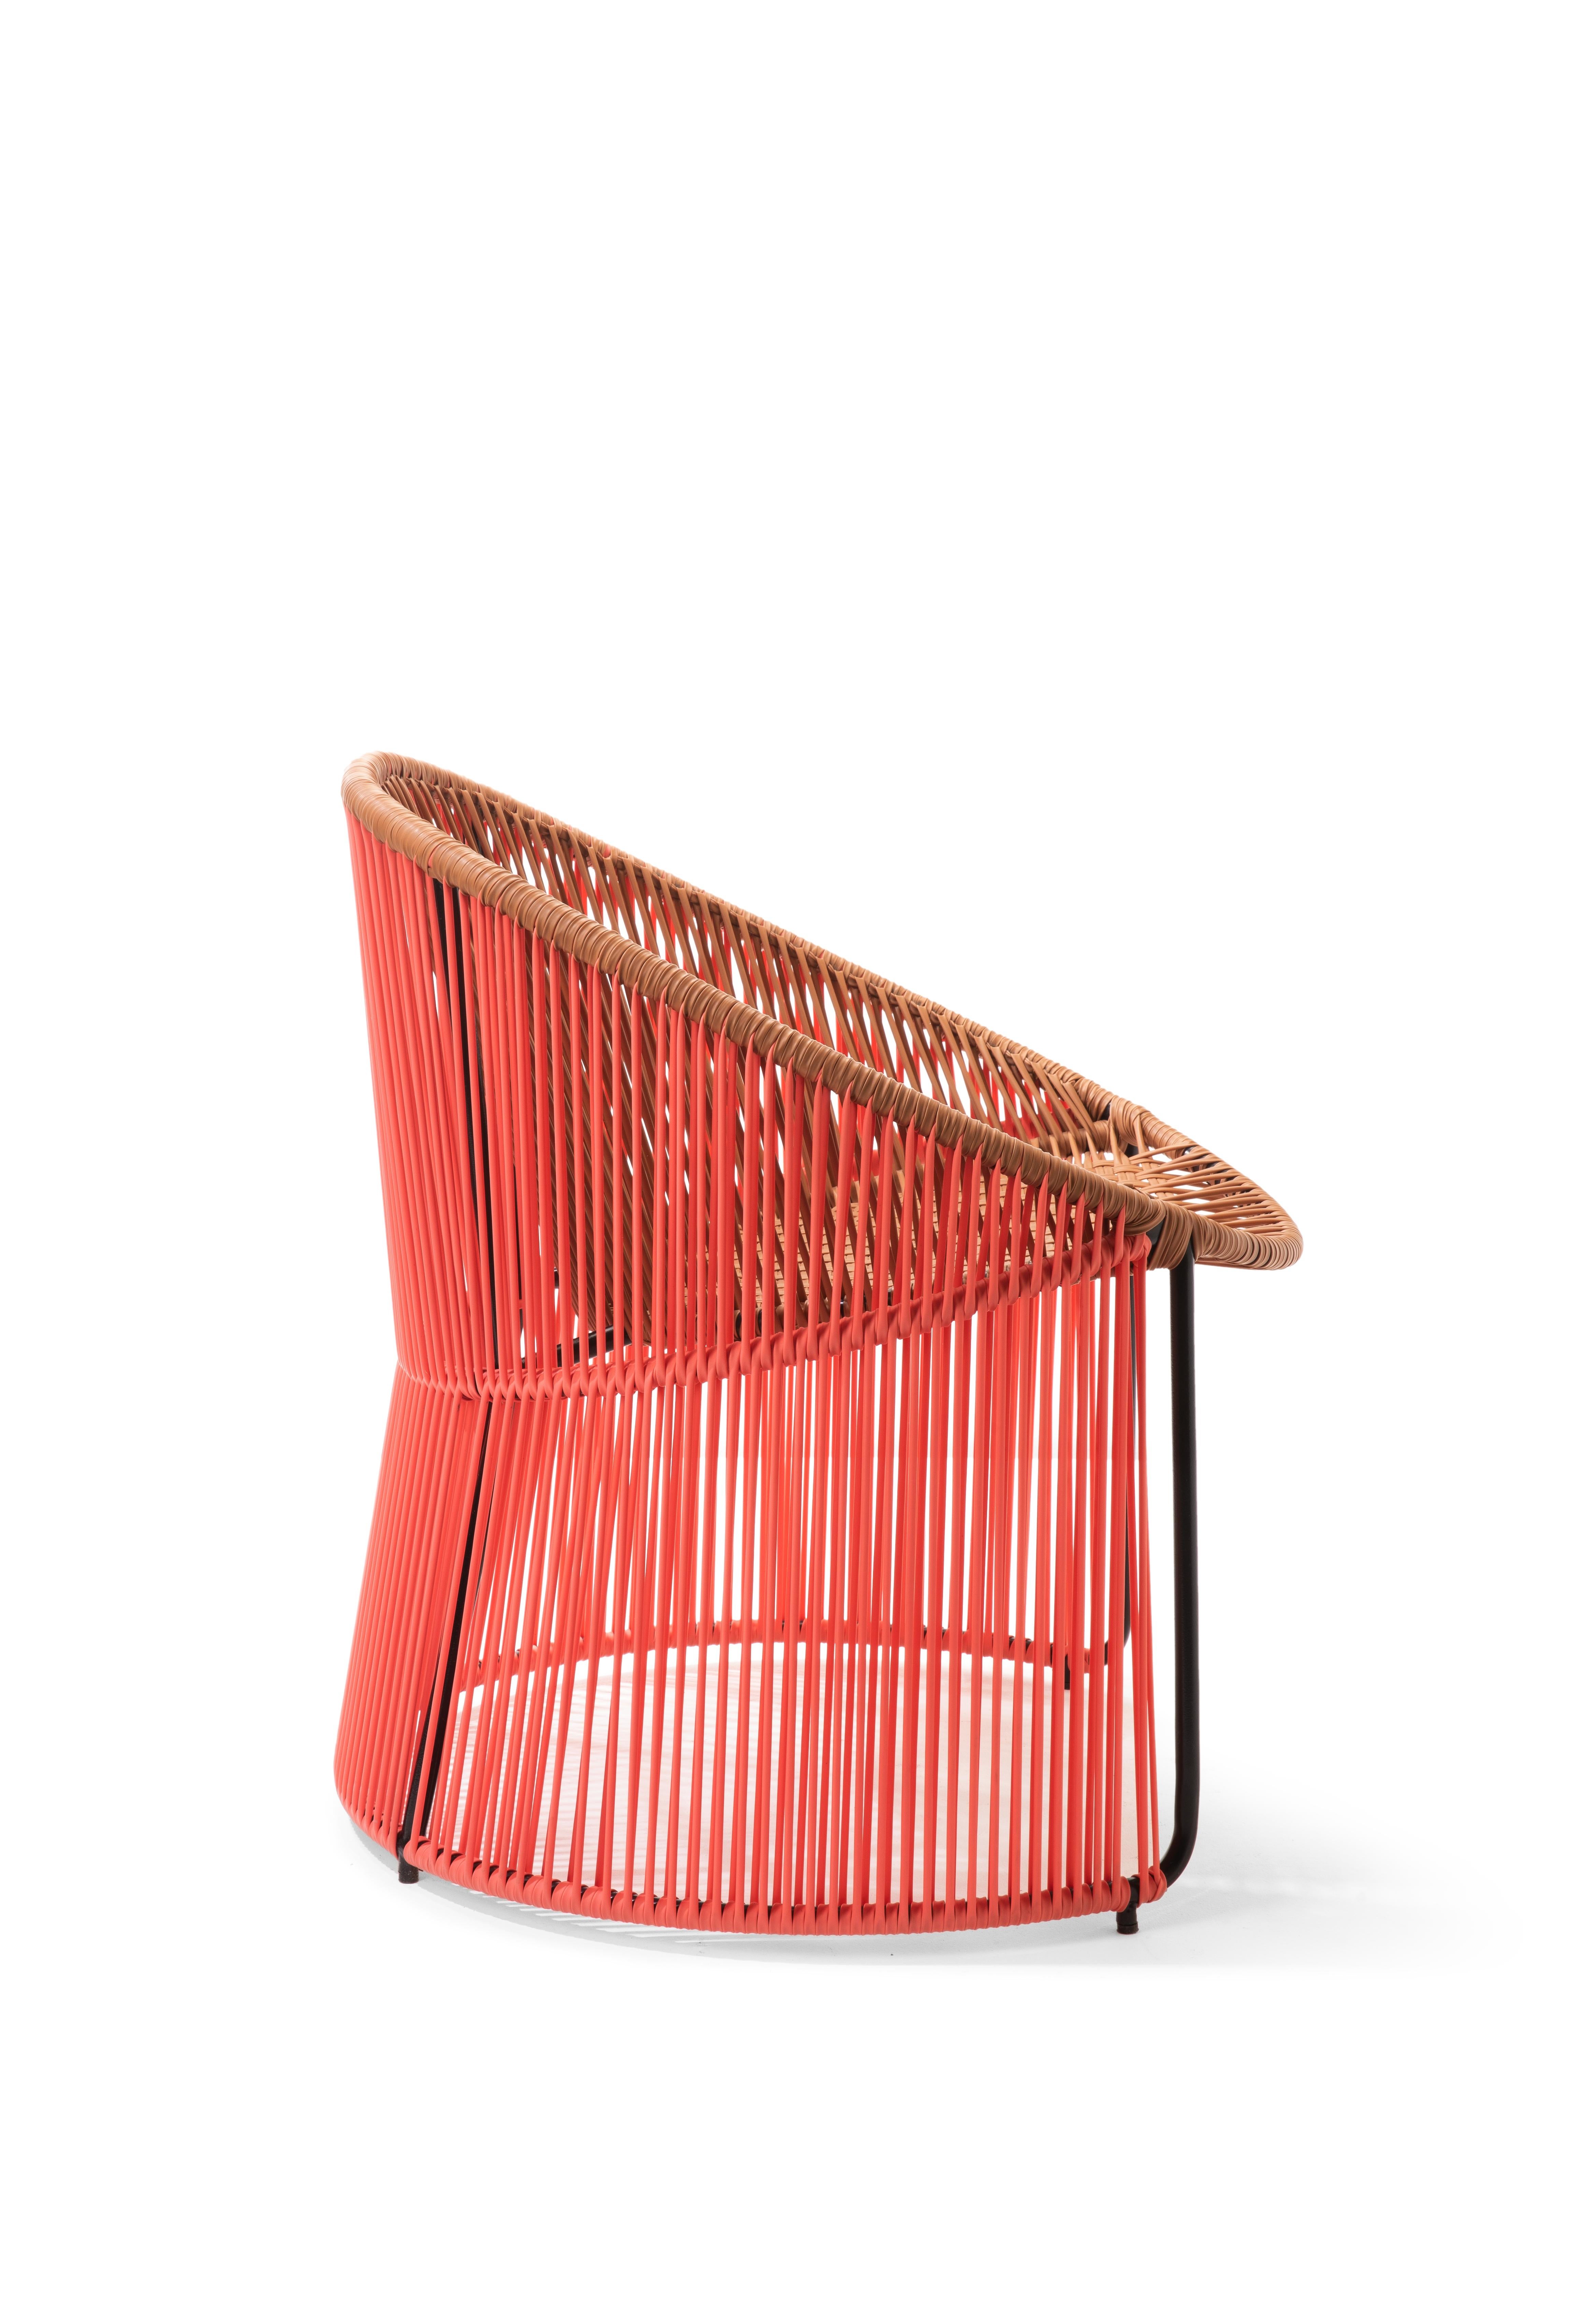 German Coral Cartagenas Lounge Chair by Sebastian Herkner For Sale